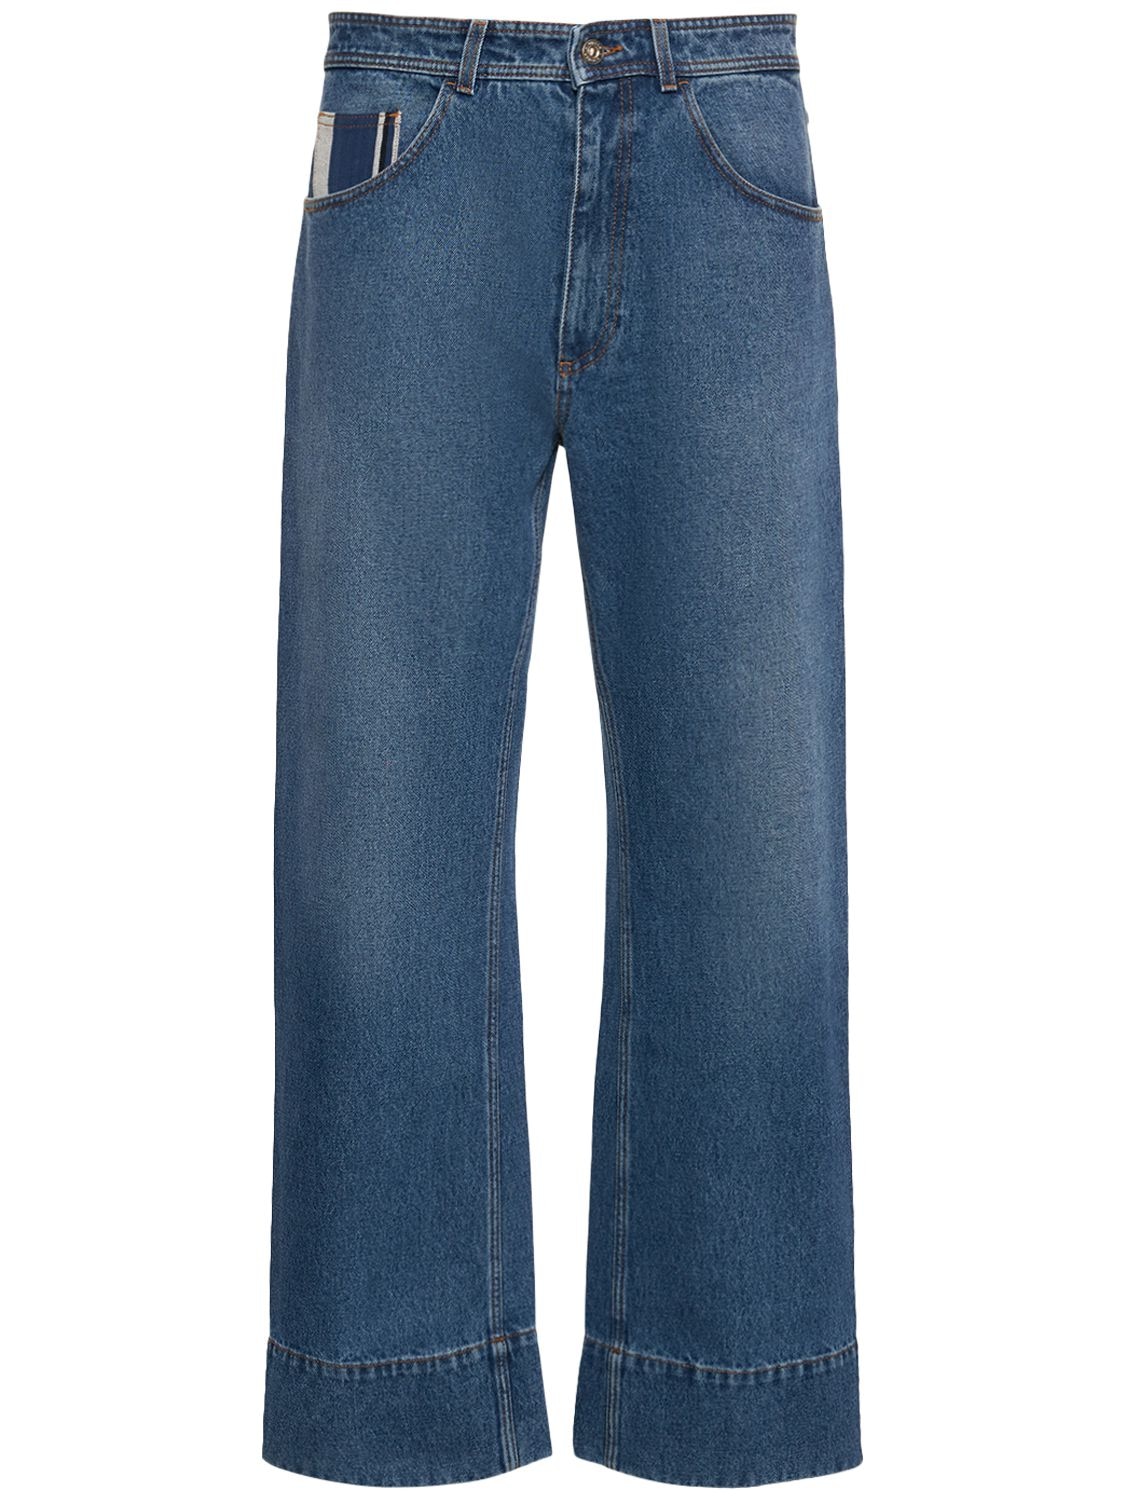 Miles Cotton Denim Jeans – MEN > CLOTHING > JEANS